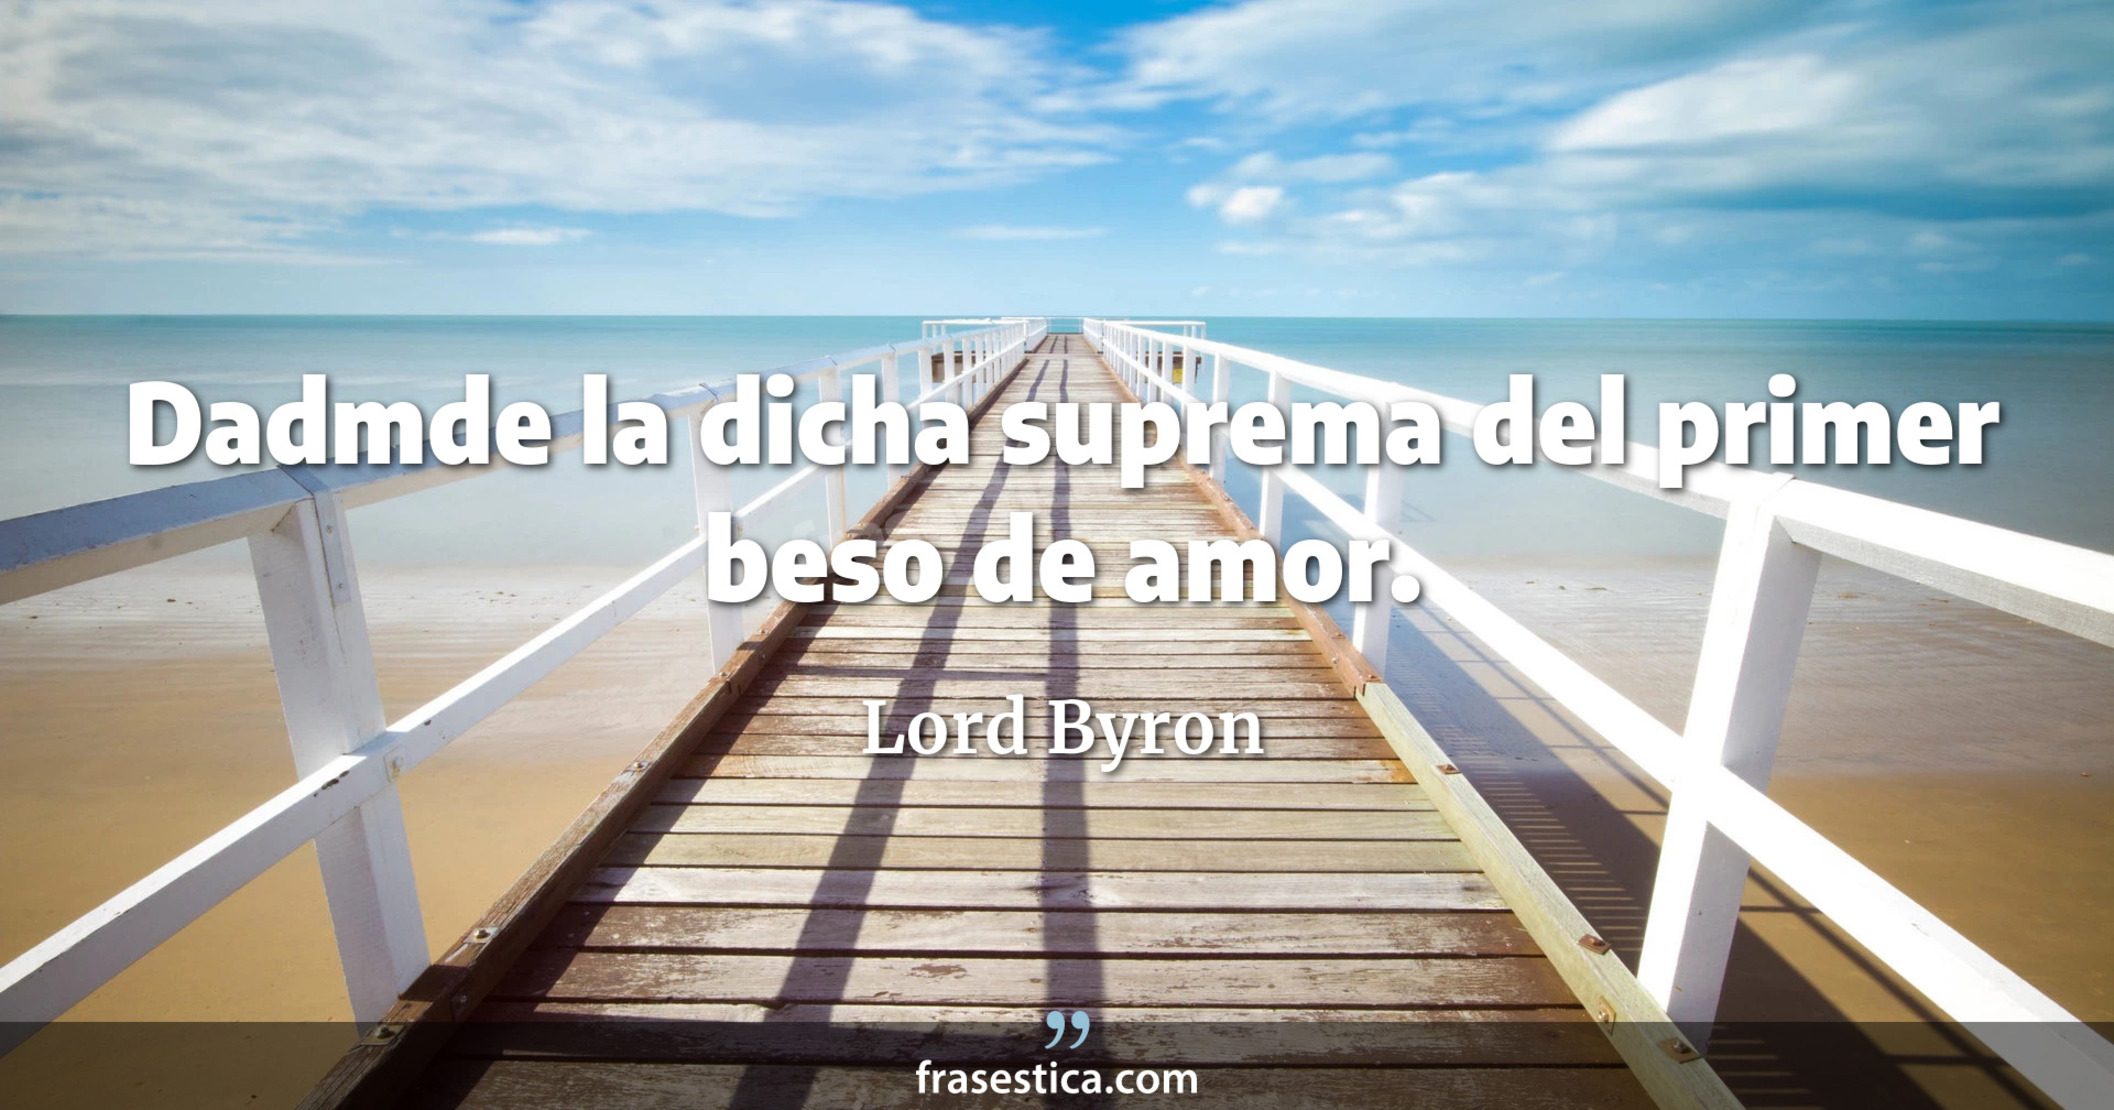 Dadmde la dicha suprema del primer beso de amor. - Lord Byron